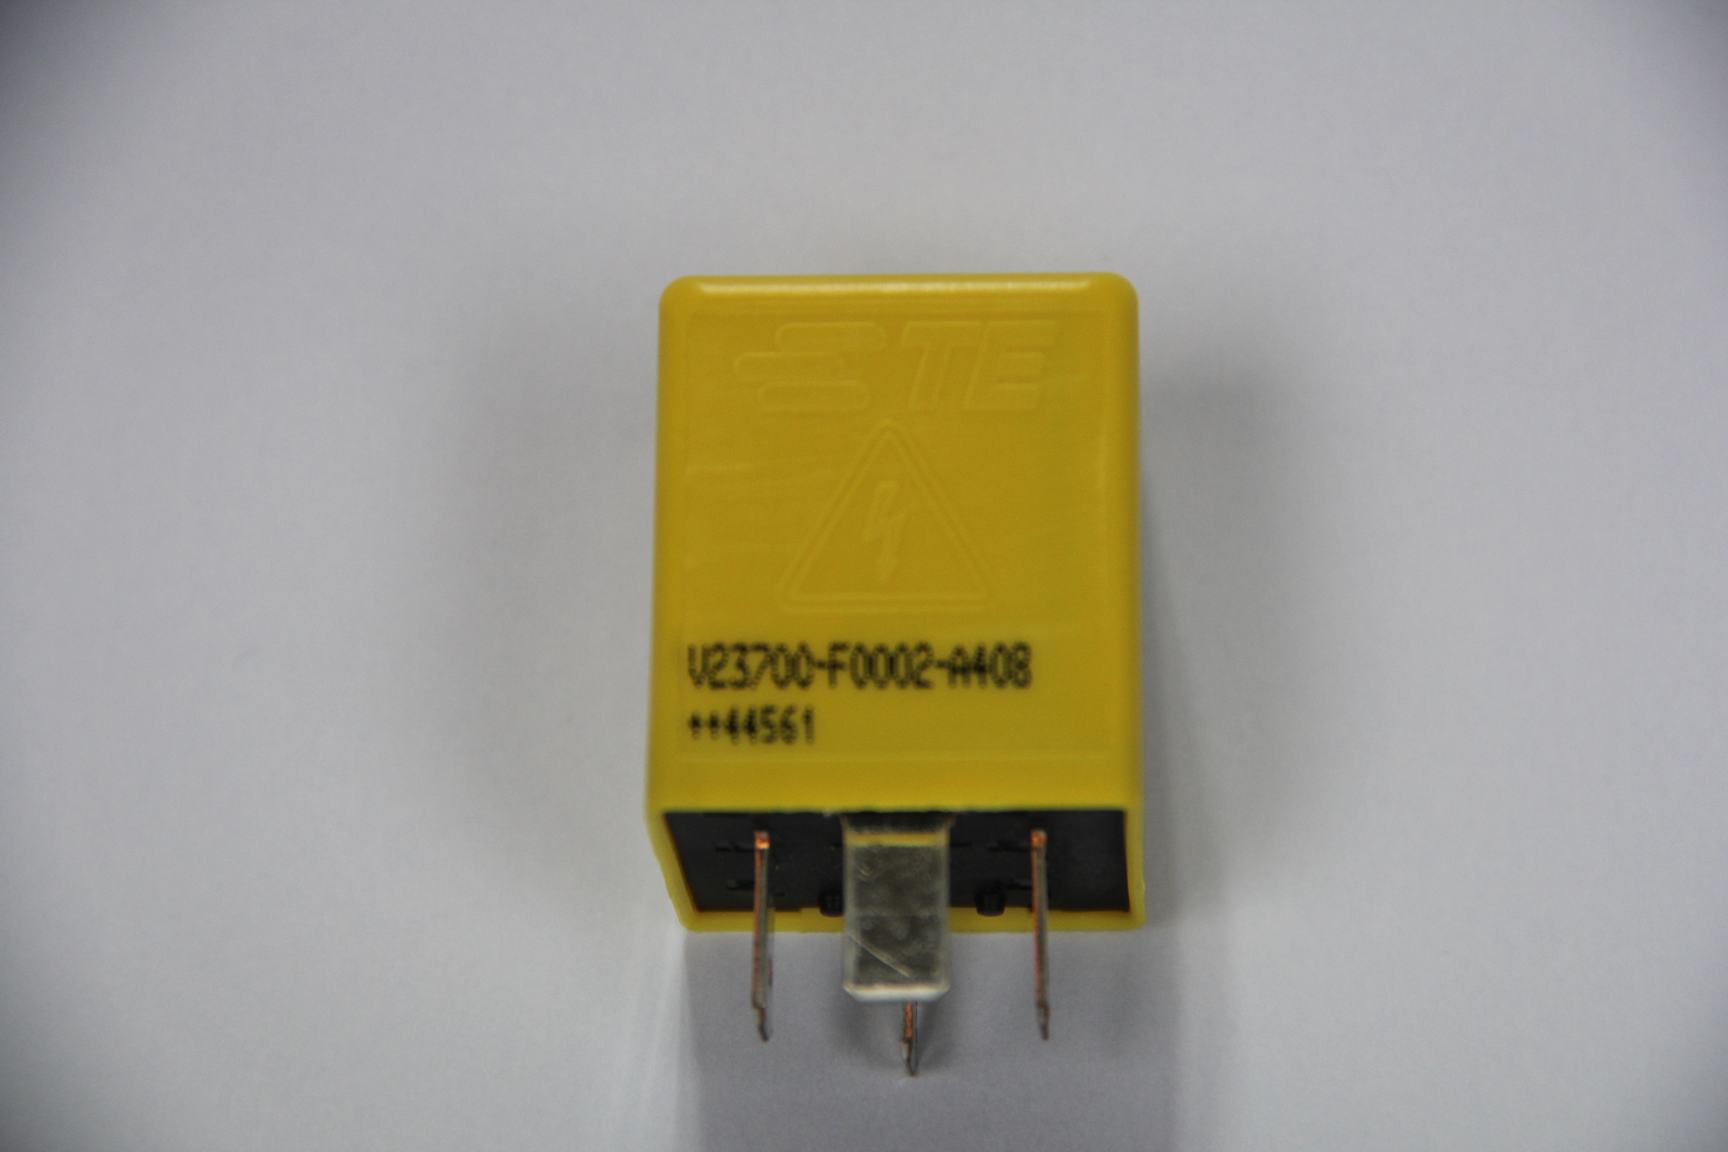 直流接触器MINIK V23700-F0002-A408